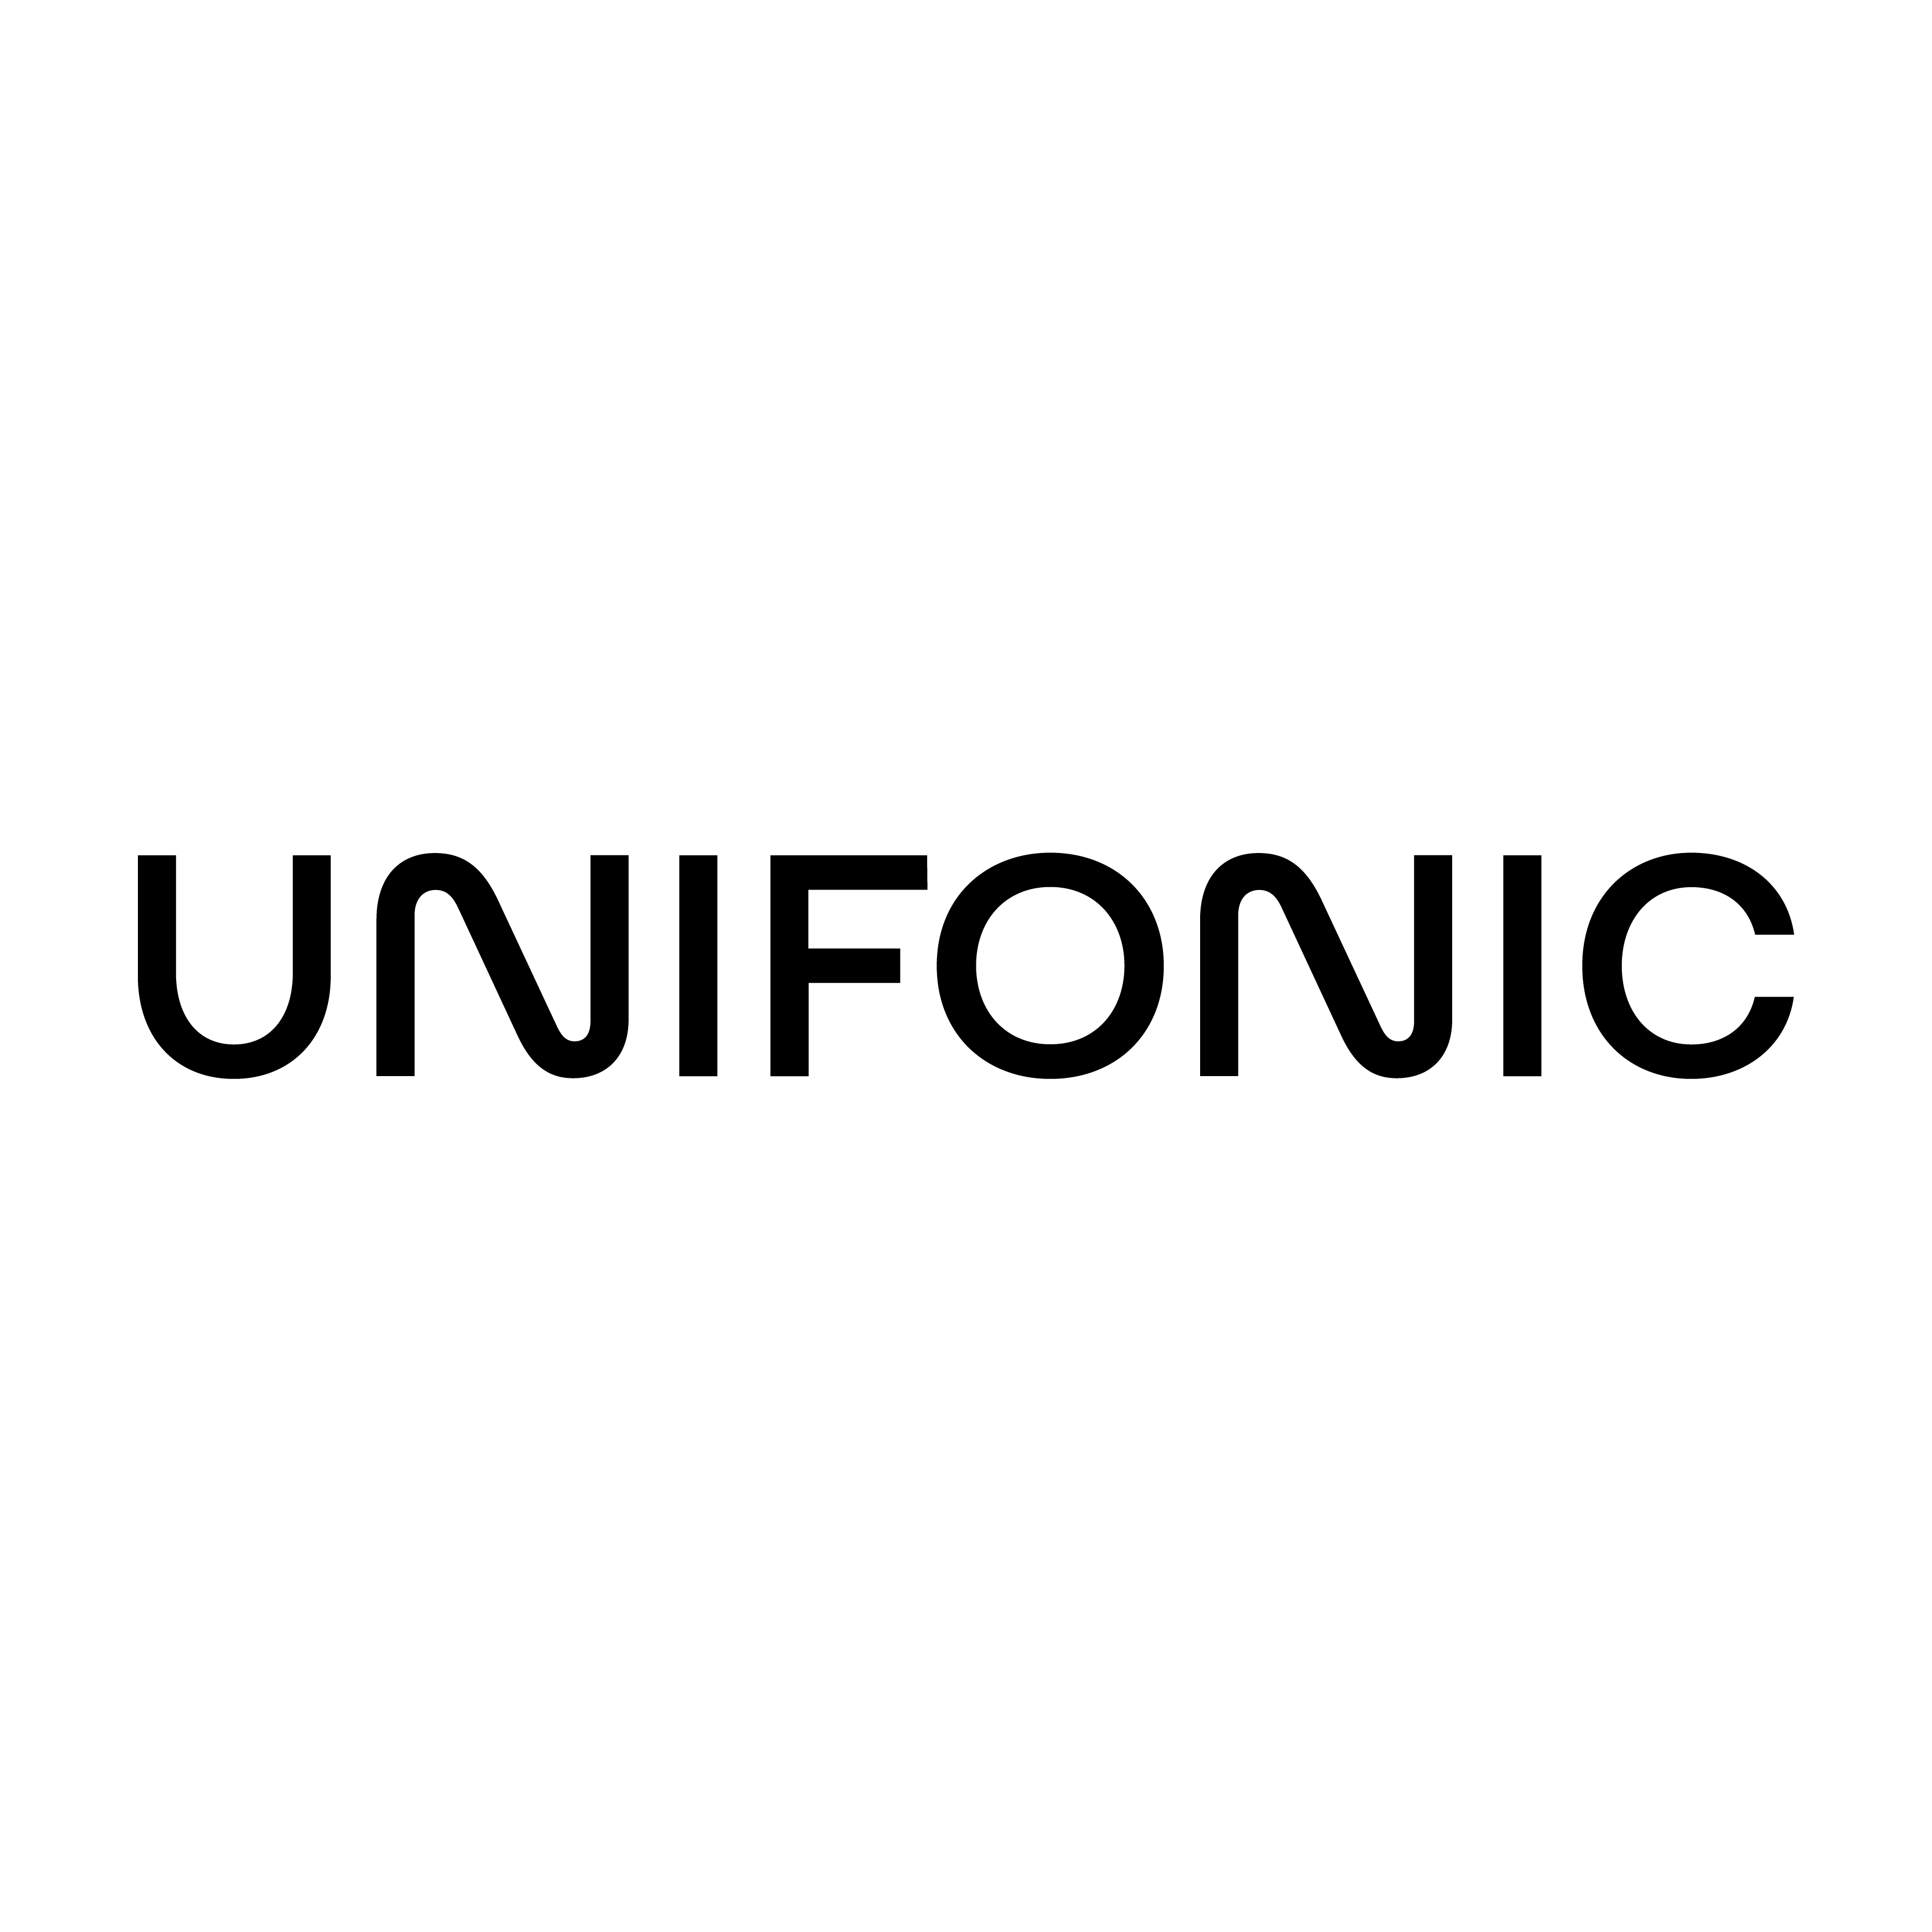 A agência Cactix, de Dubai, Dubai, United Arab Emirates, ajudou Unifonic a expandir seus negócios usando SEO e marketing digital